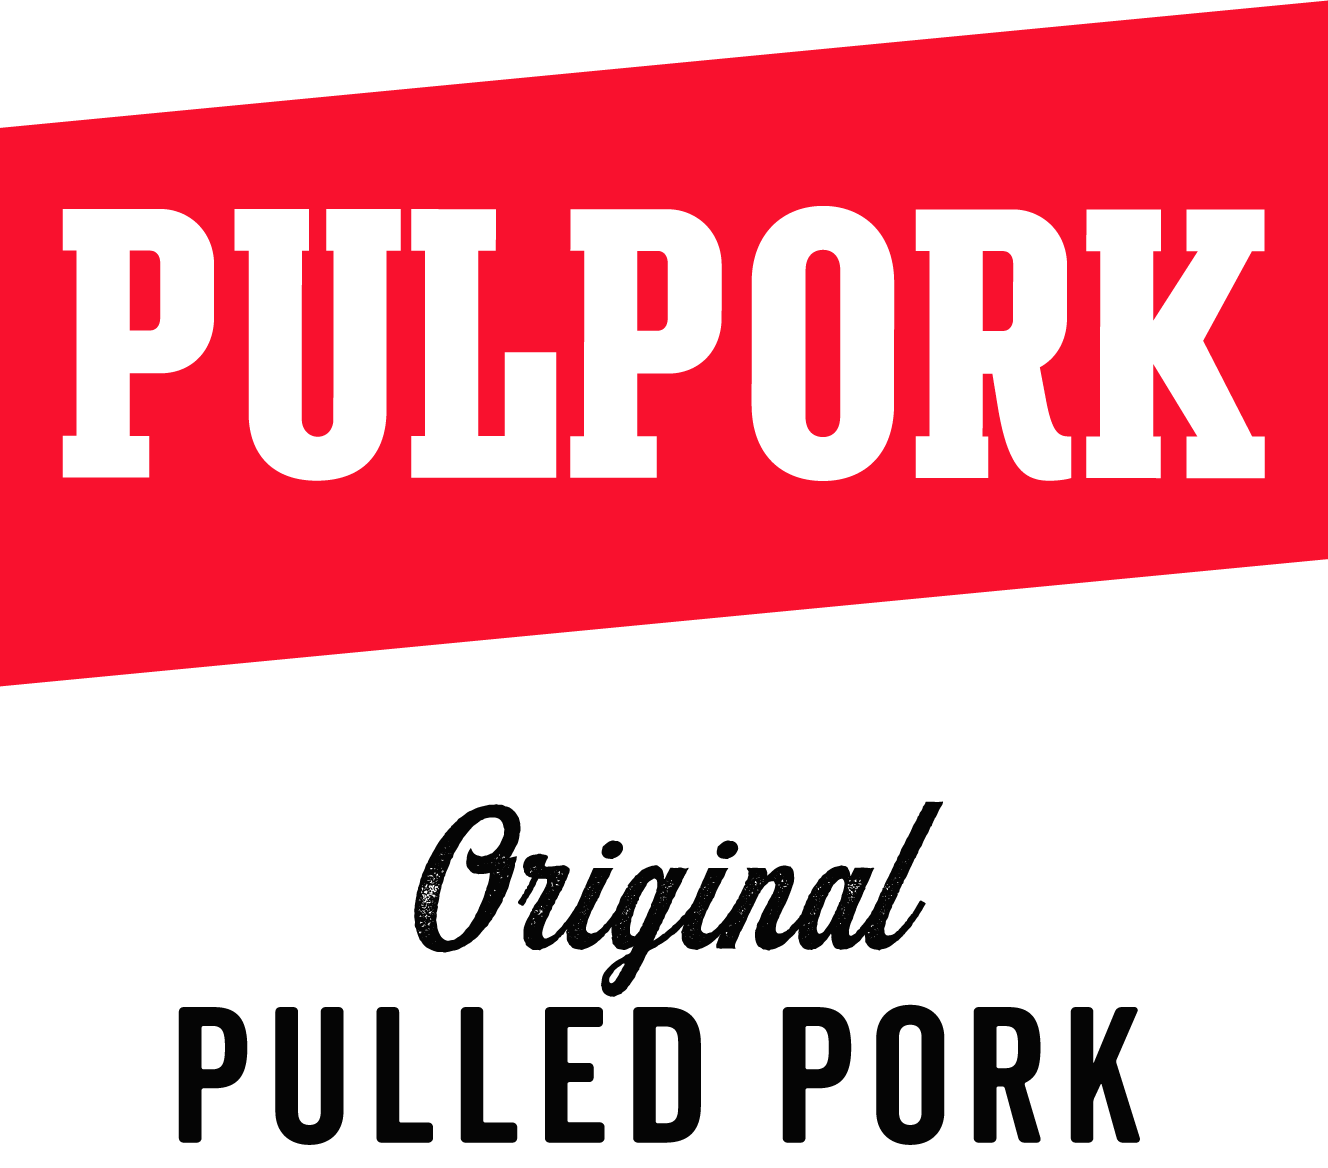 Pulpork